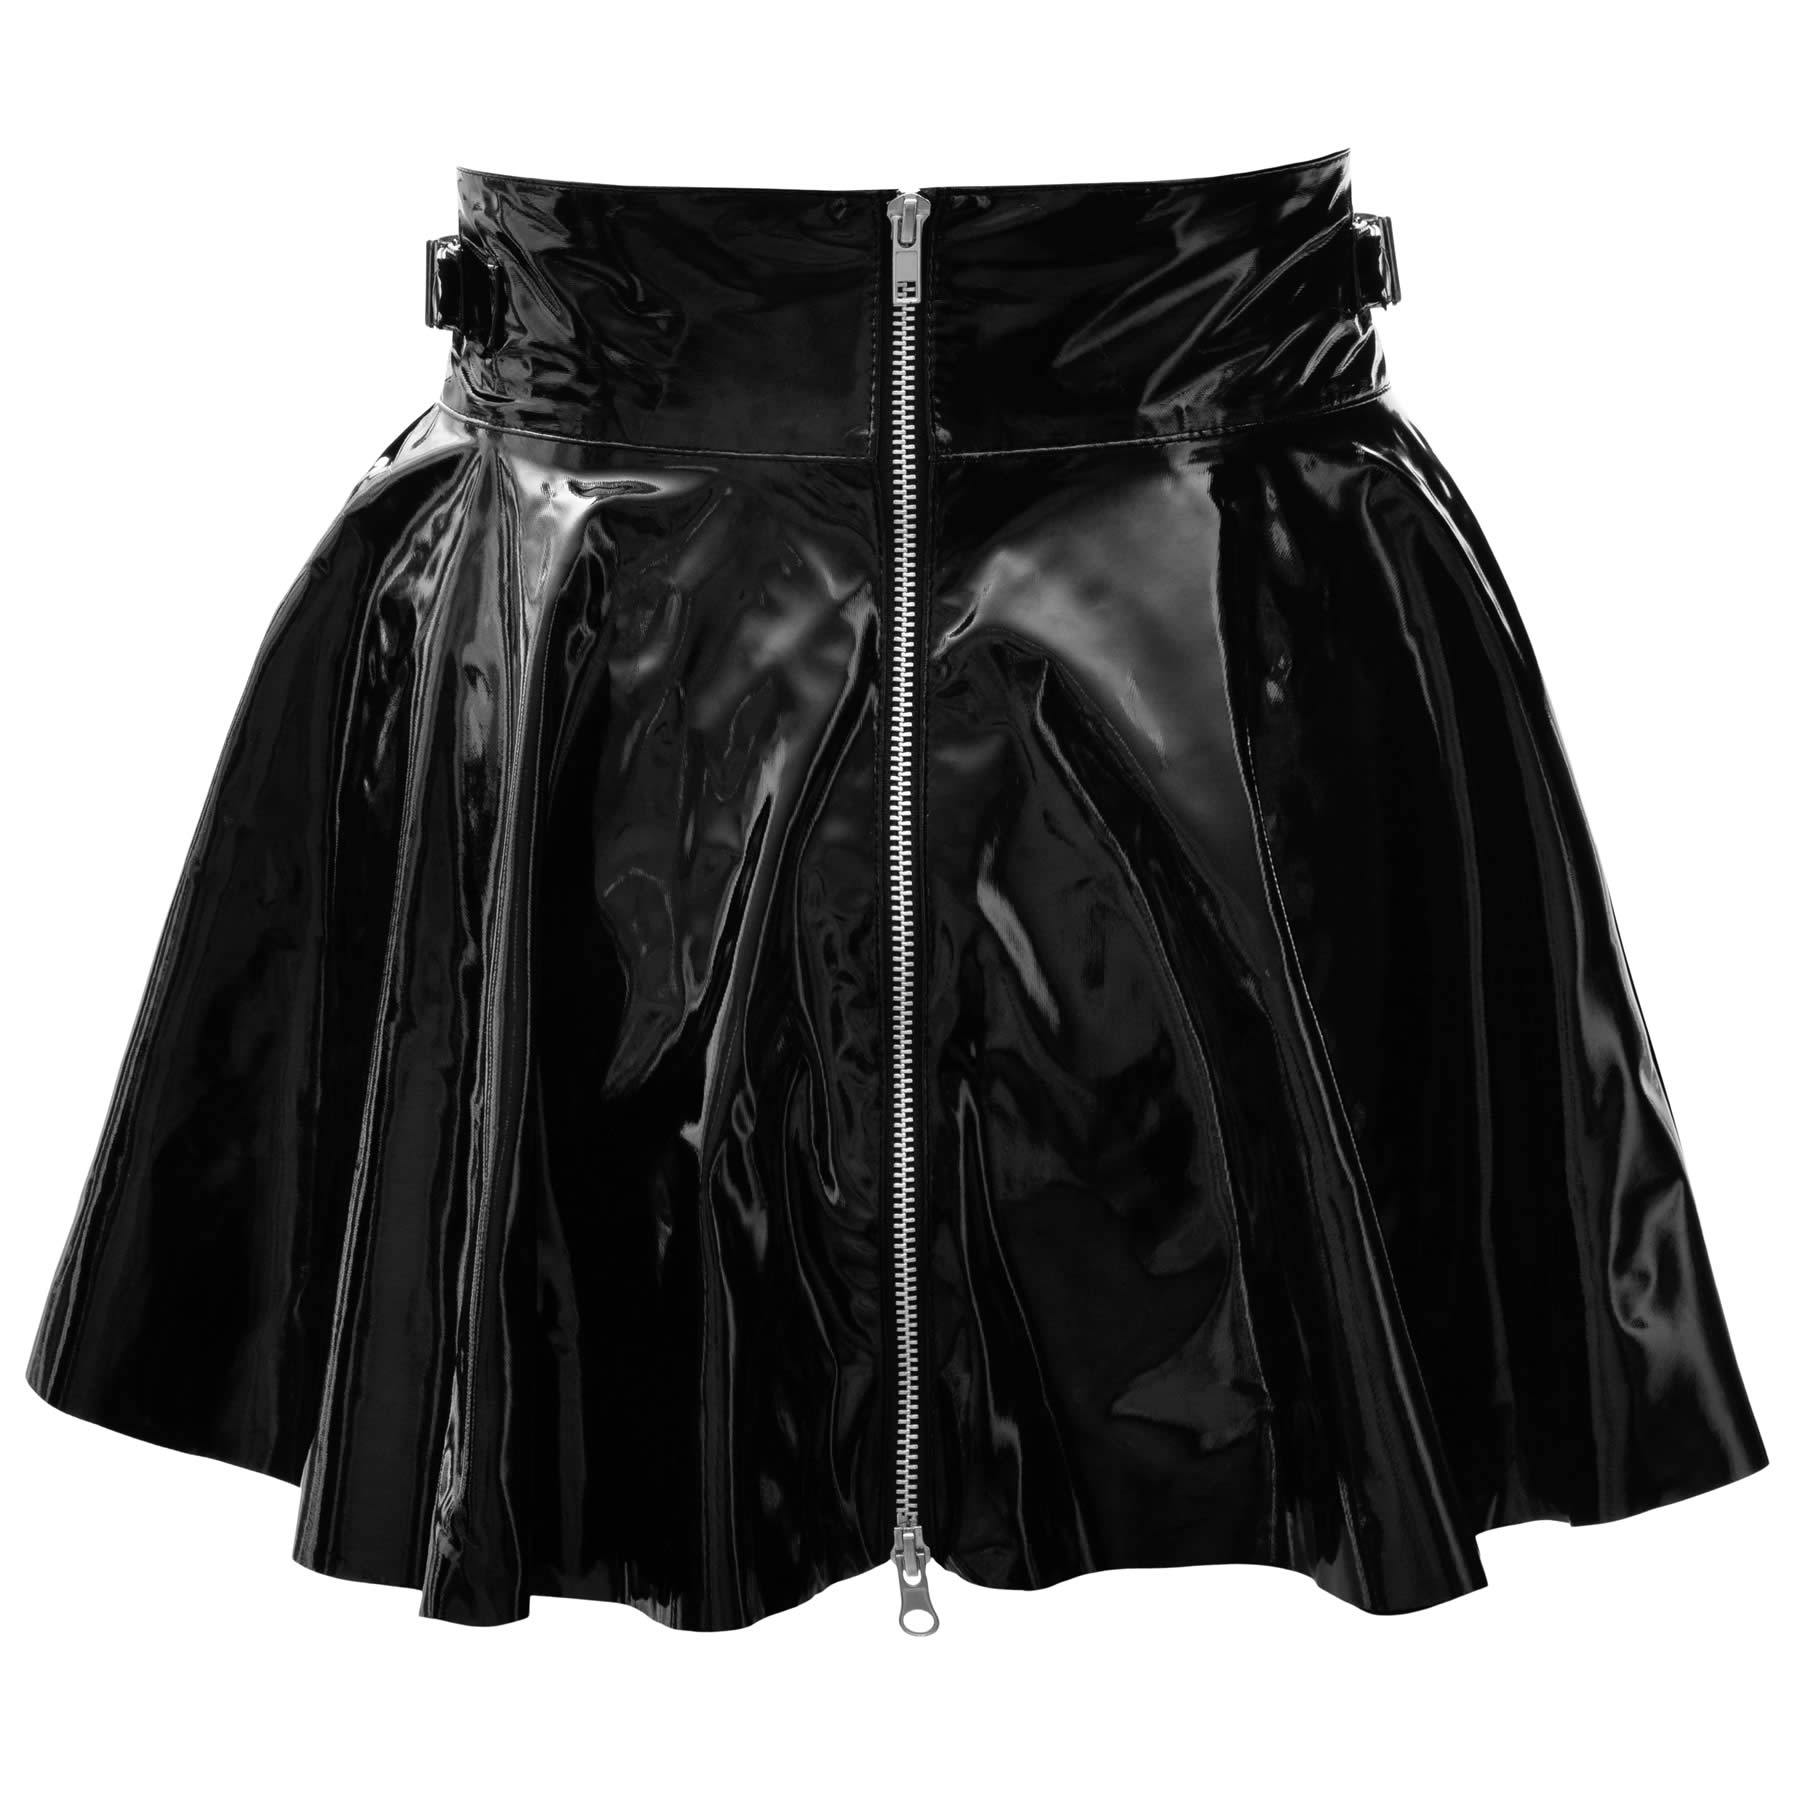 Vinyl mini skirt with zipper